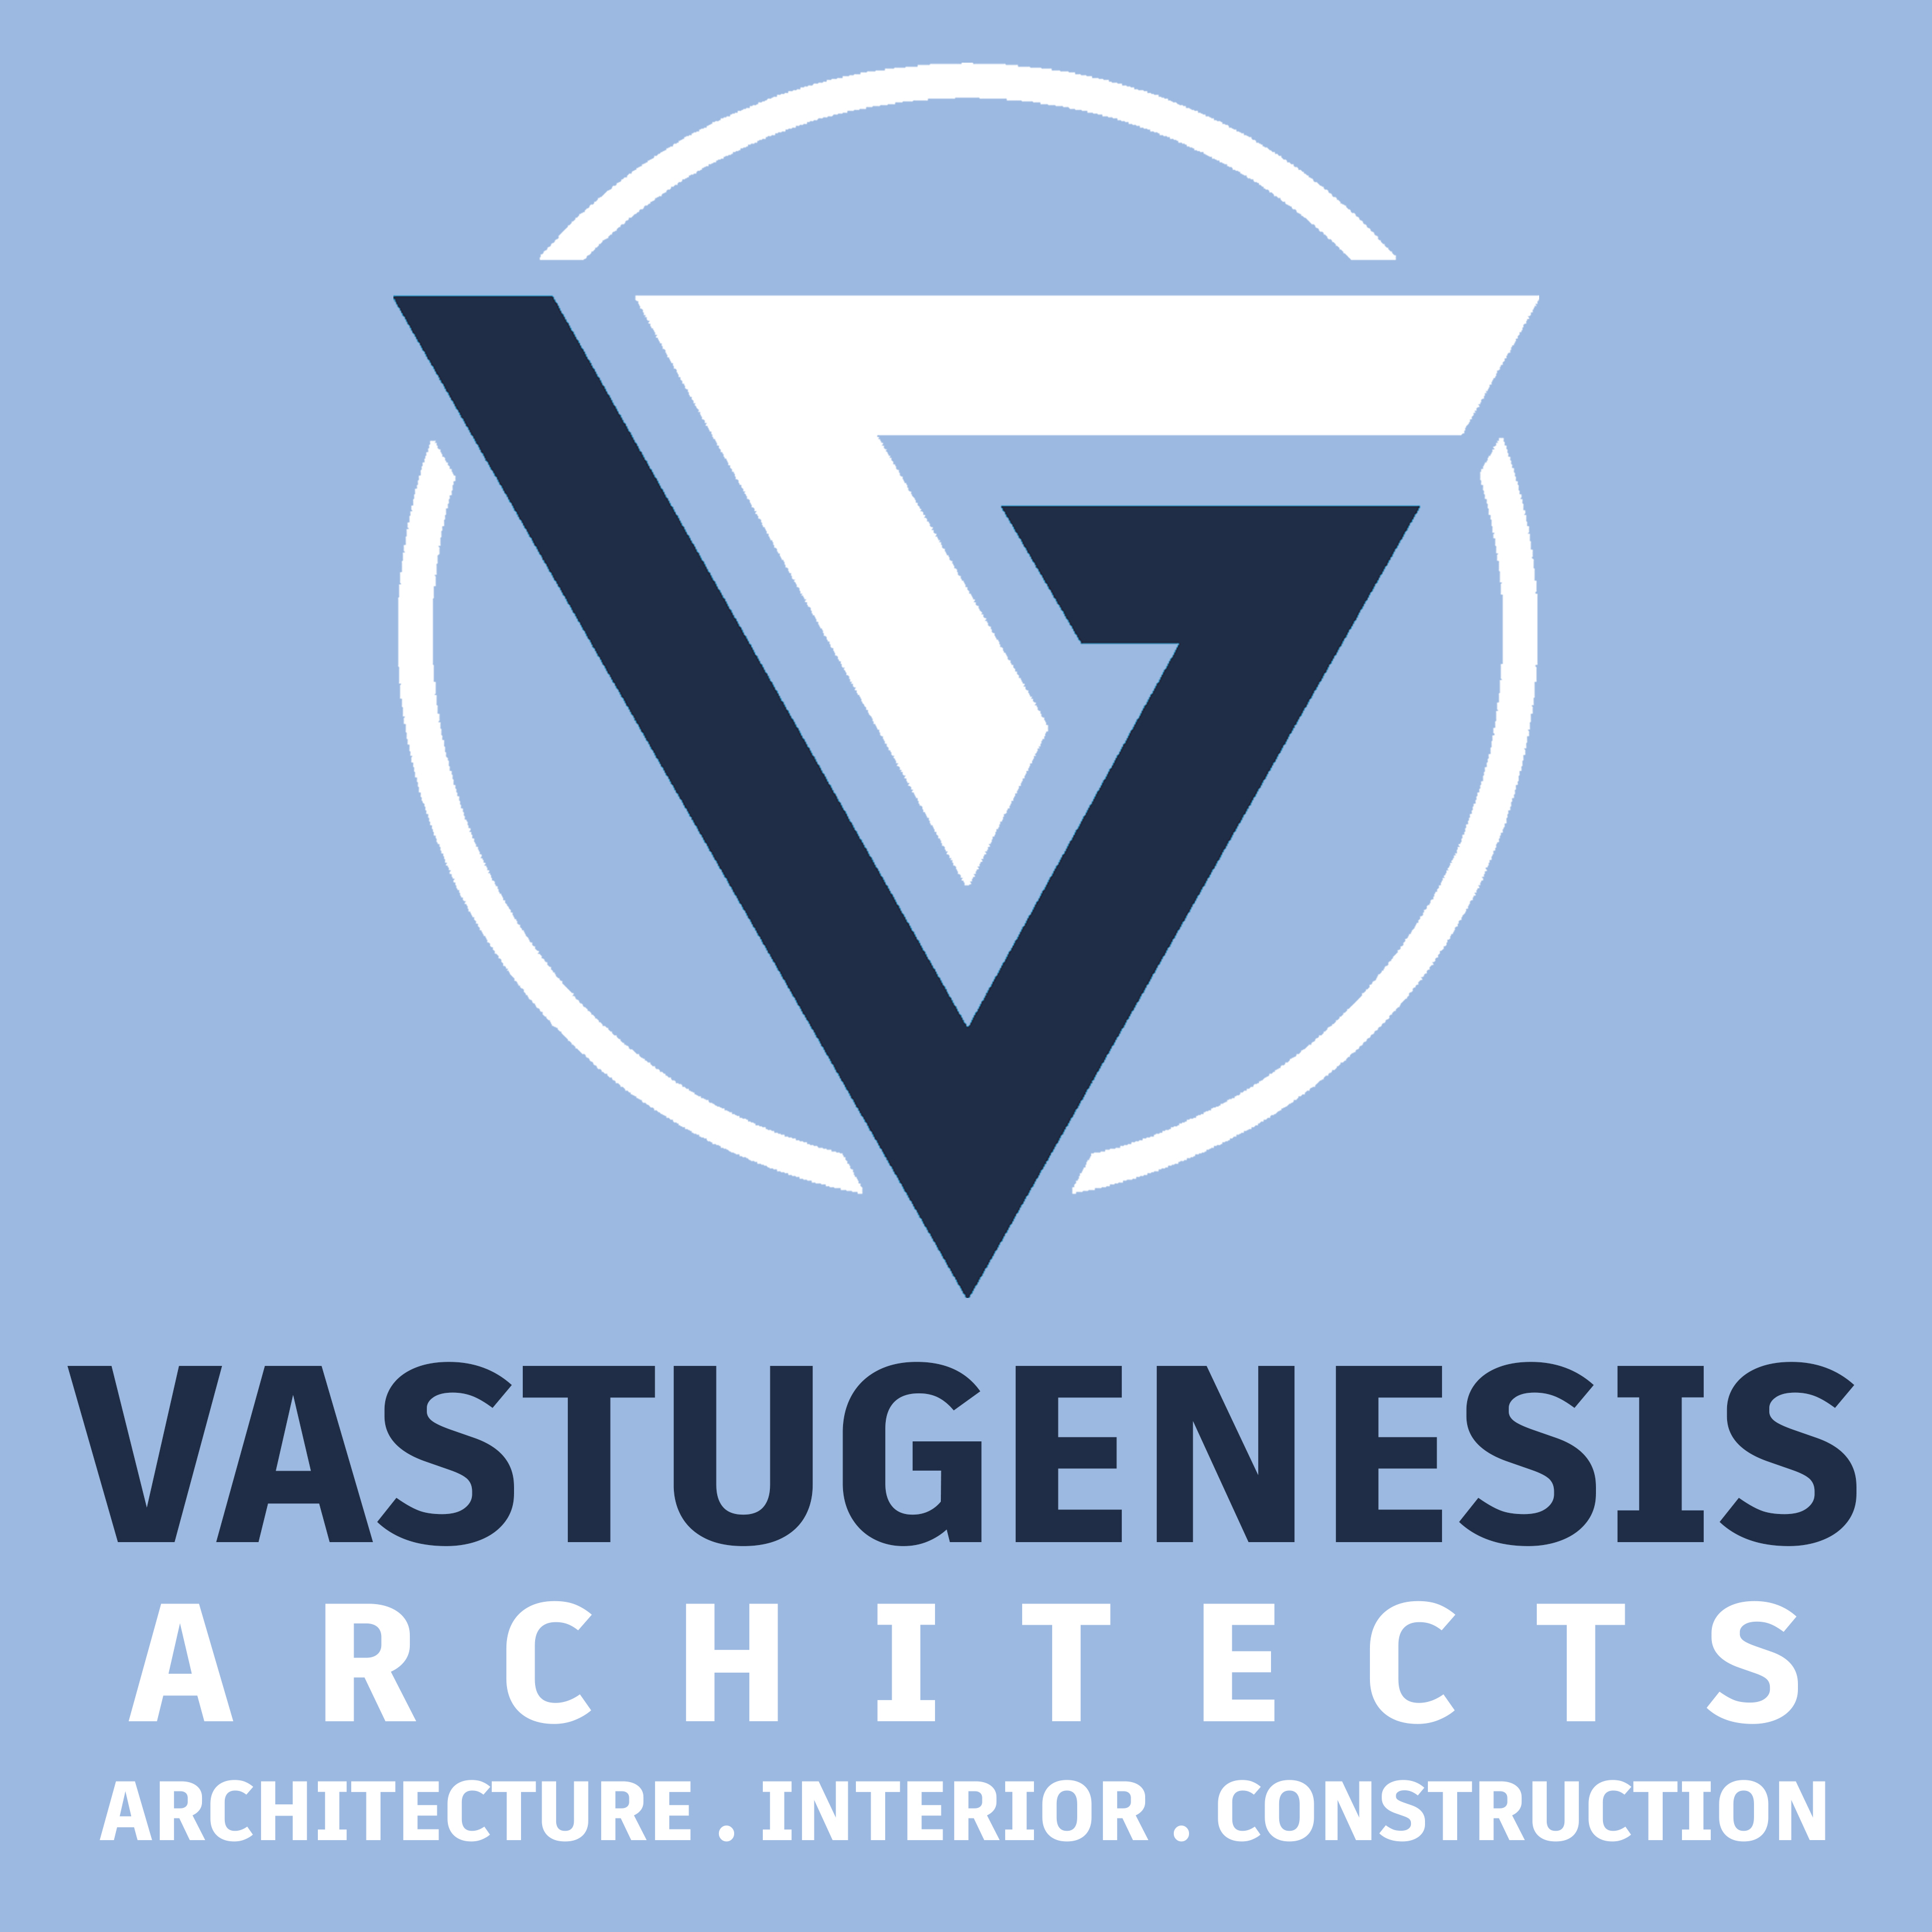 VastuGenesis Architects|Architect|Professional Services